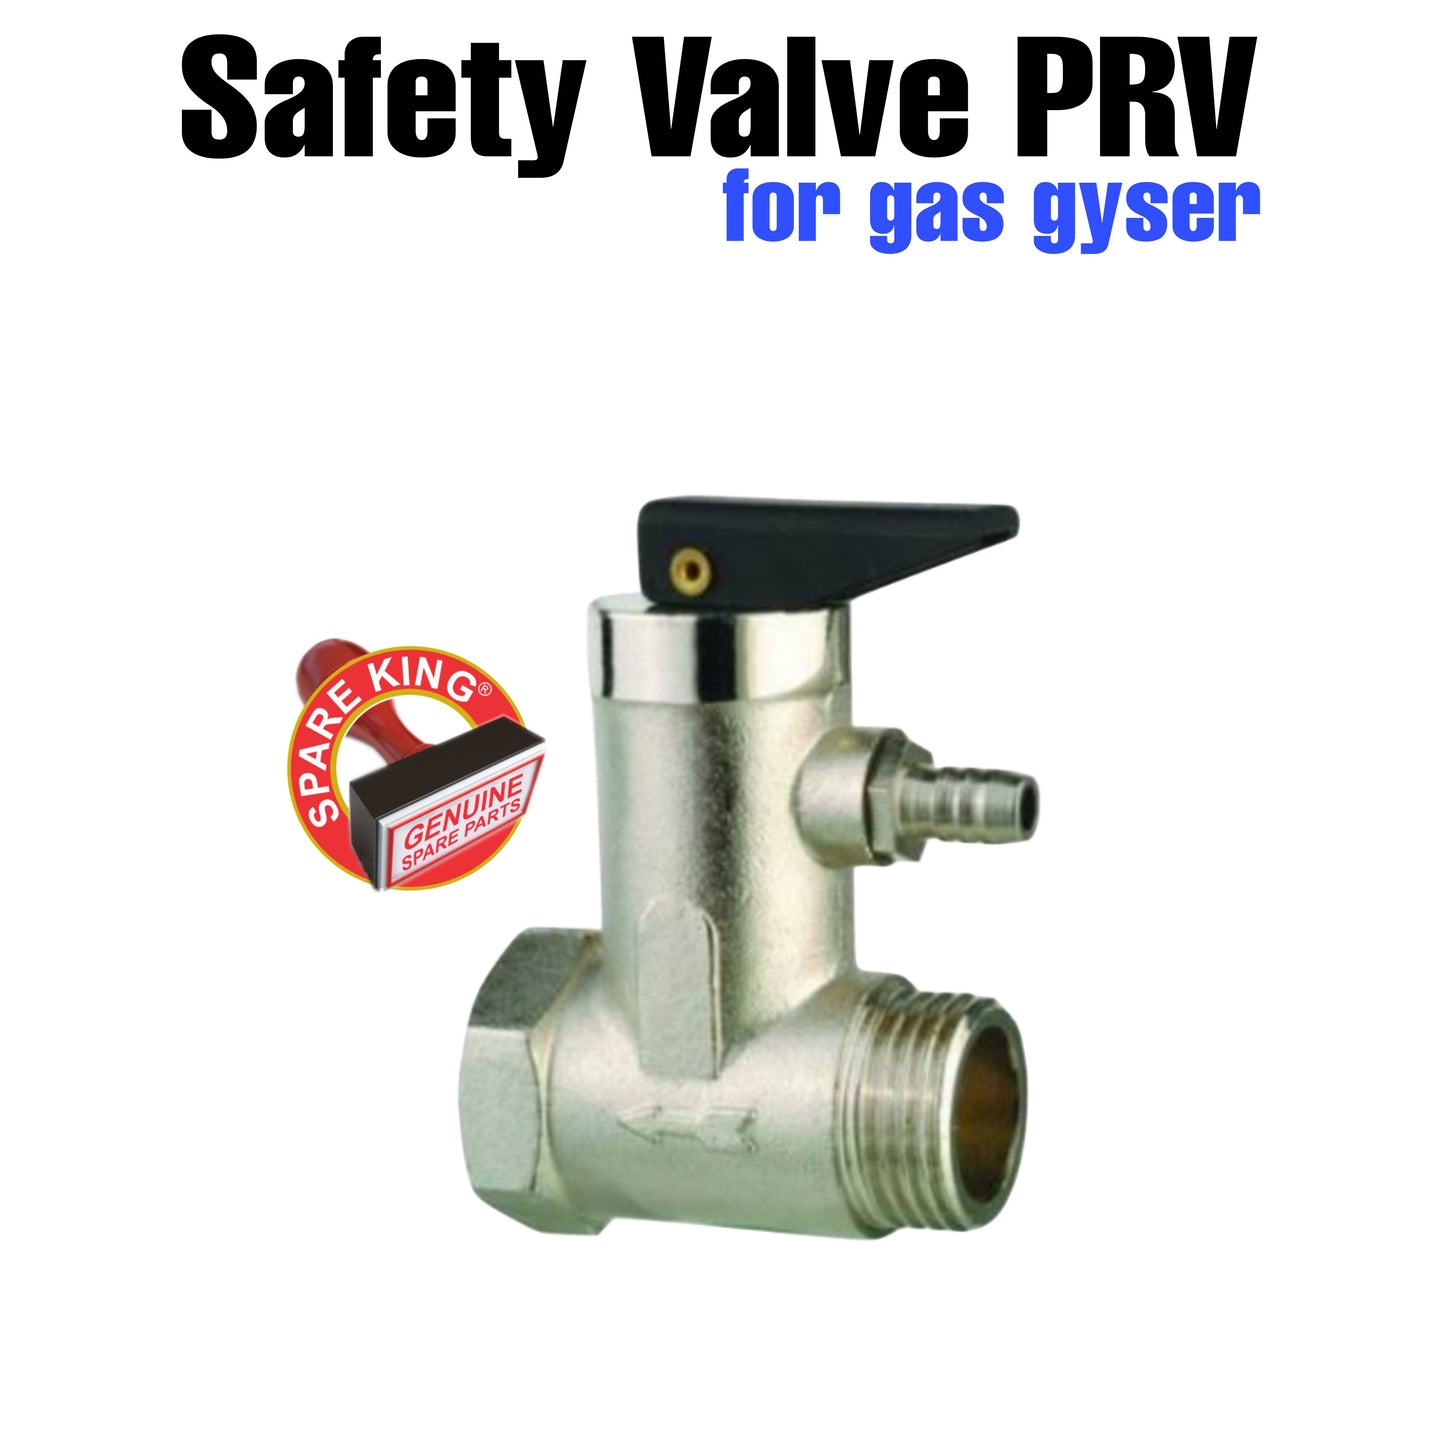 Safety Valve PRV